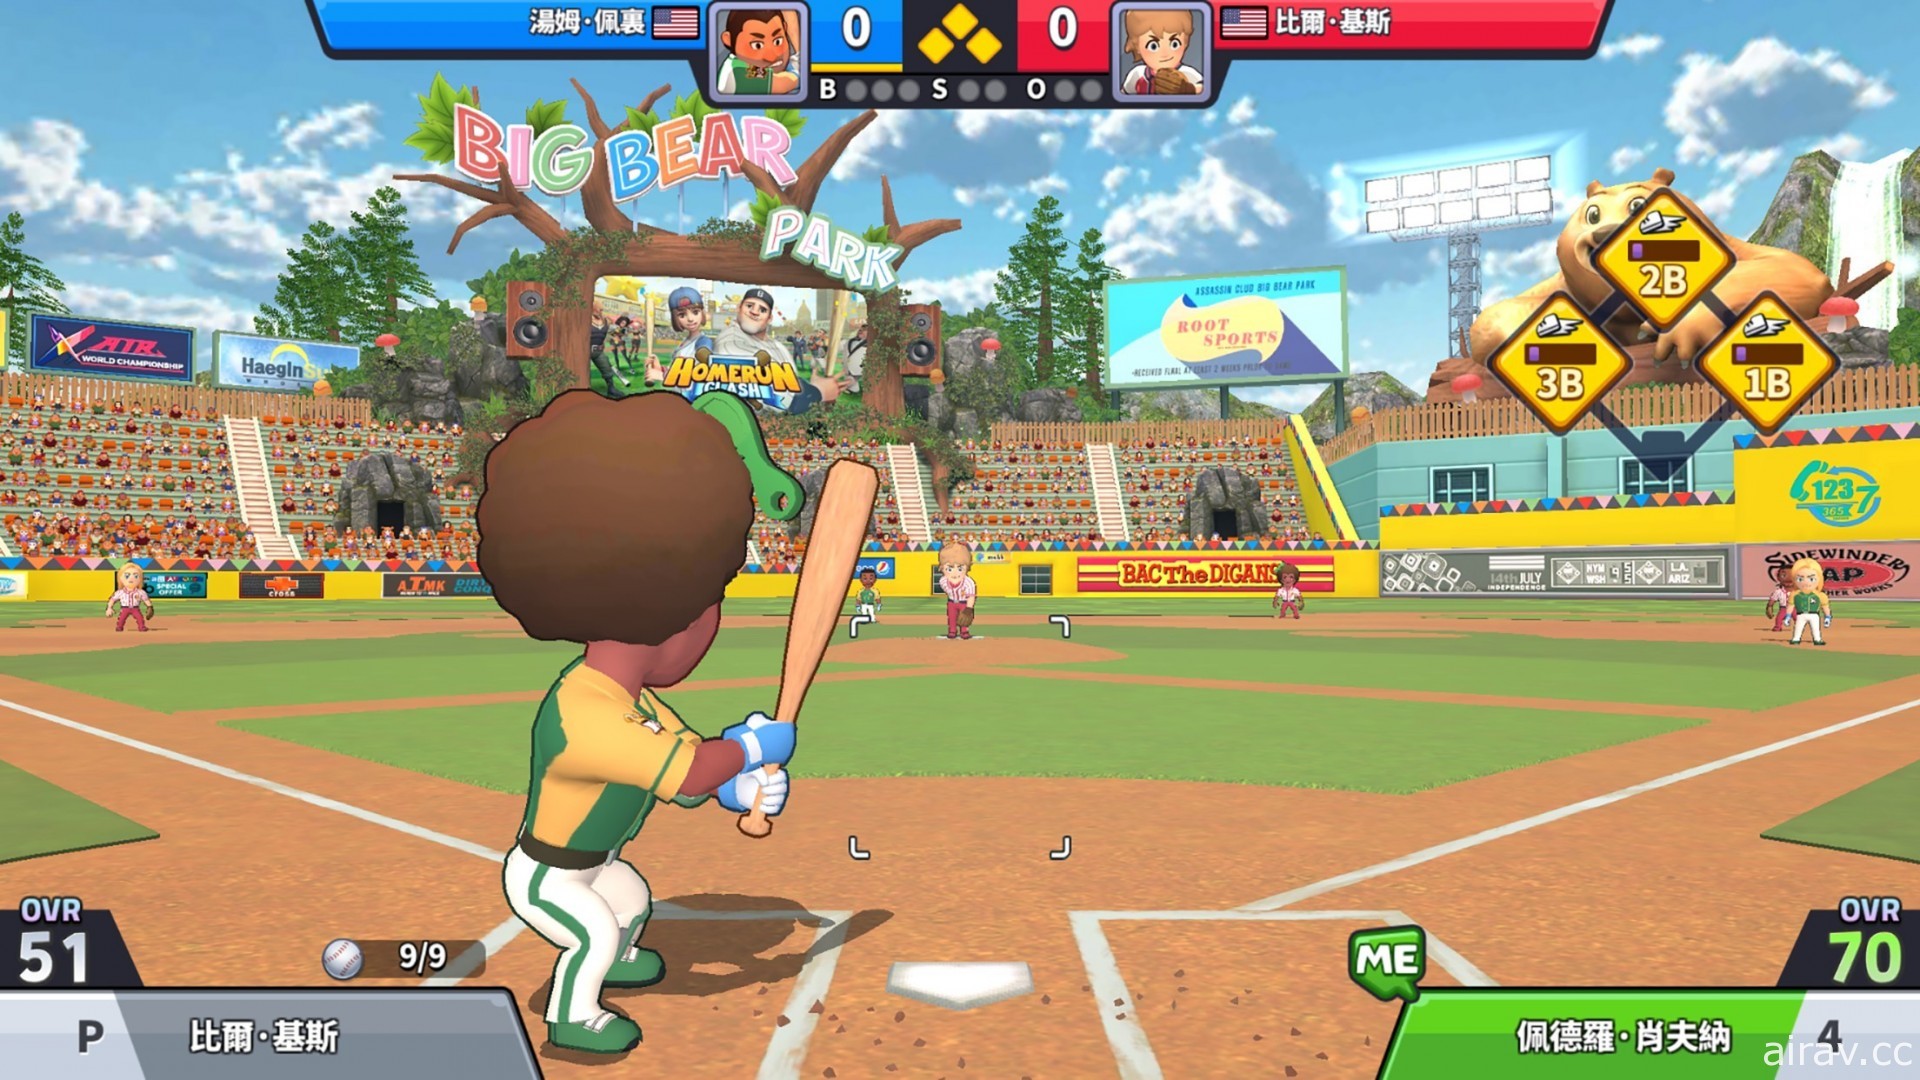 繼承《全壘衝突》世界觀新作《超級棒球聯盟》全球版本上架 享受棒球投打對決樂趣